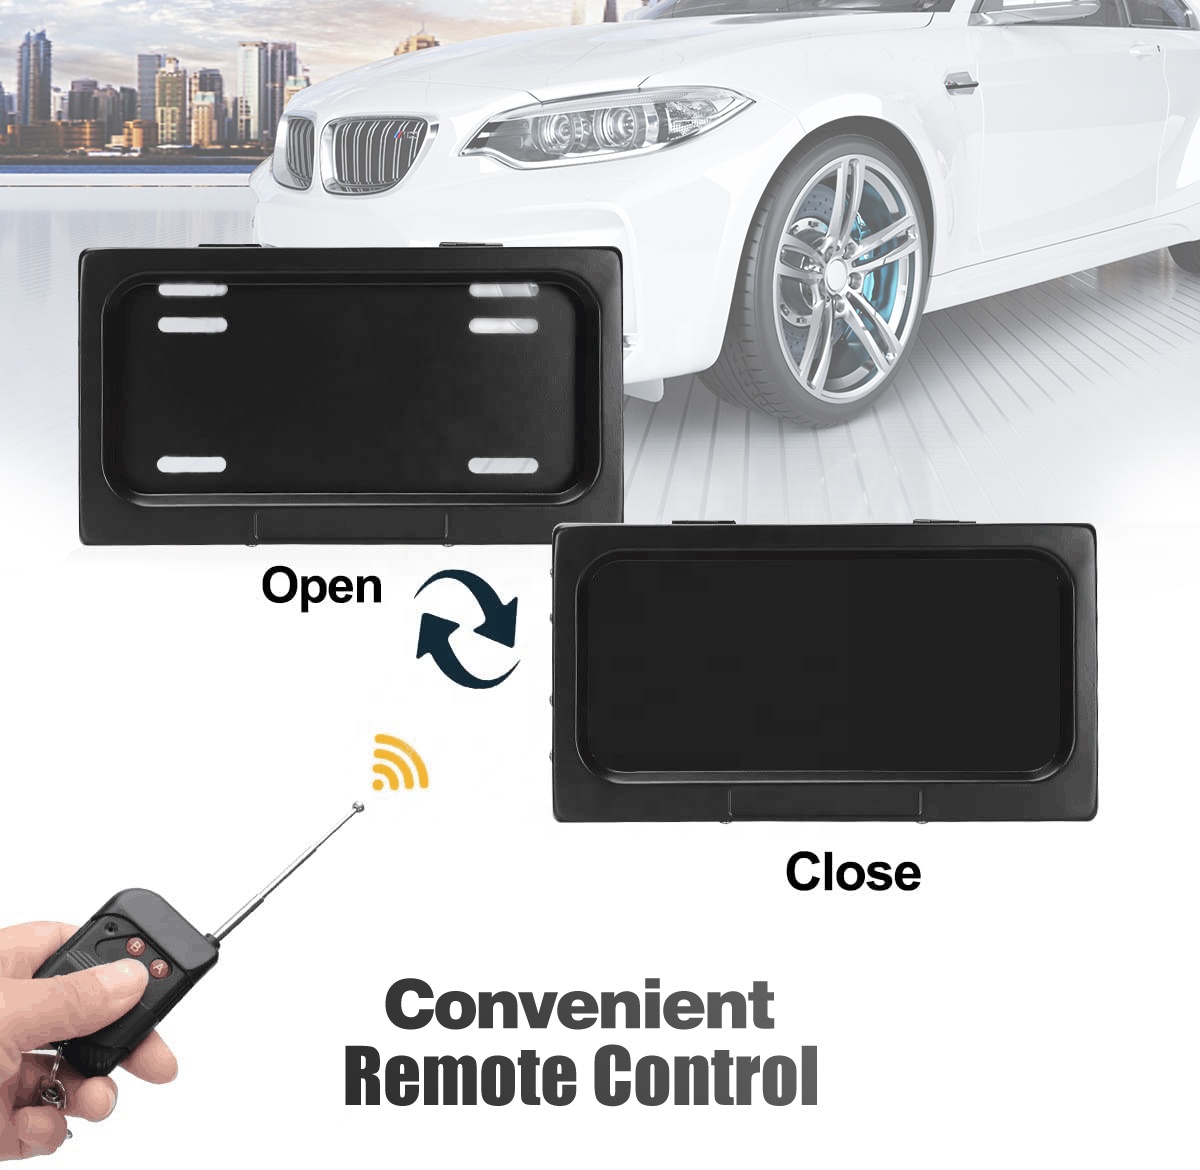 संयुक्त राज्य अमेरिका / कनाडा / मेक्सिको मानक कार प्लेट फ्रेम के लिए रिमोट कंट्रोल चुपके लाइसेंस प्लेट धारक विशेष रुप से प्रदर्शित छवि